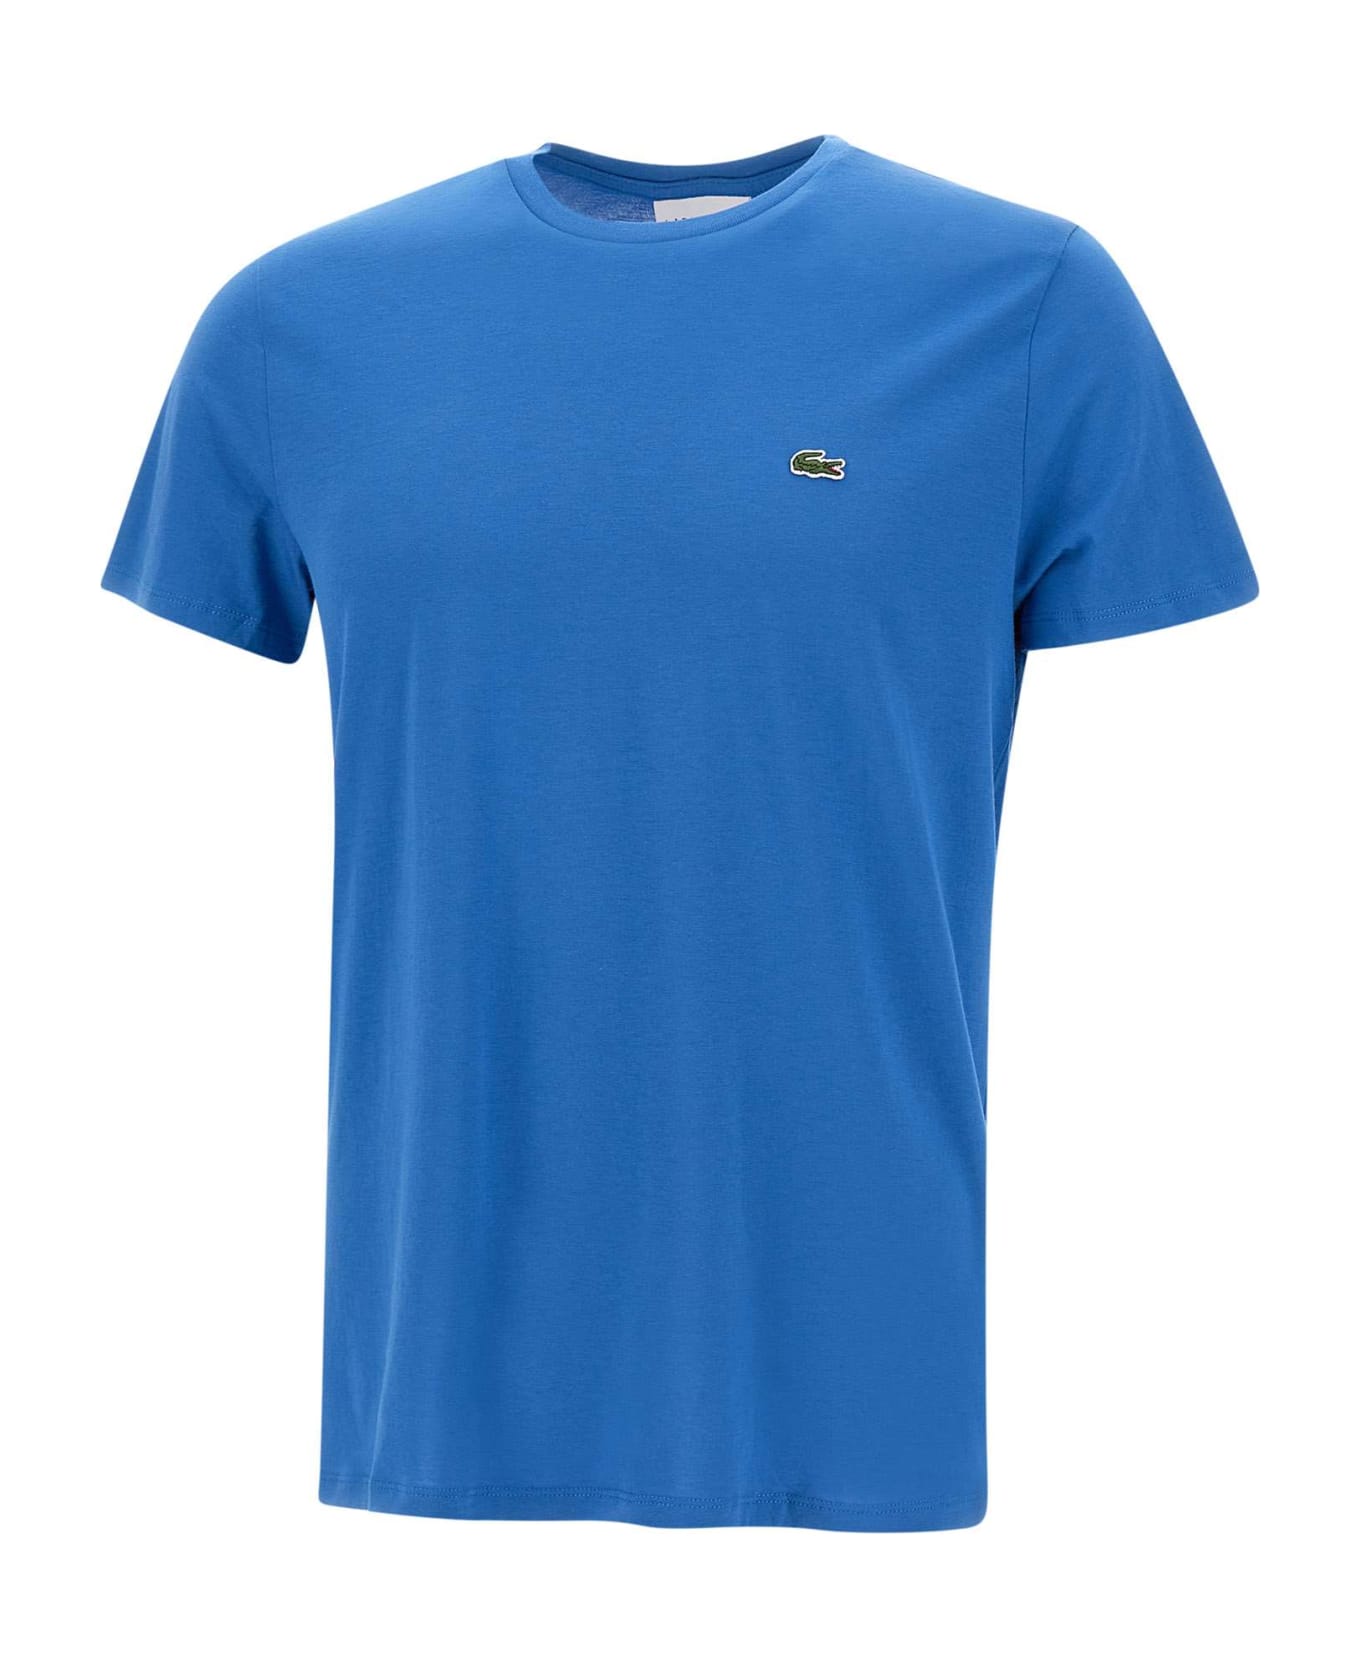 Lacoste Cotton T-shirt - BLUE シャツ